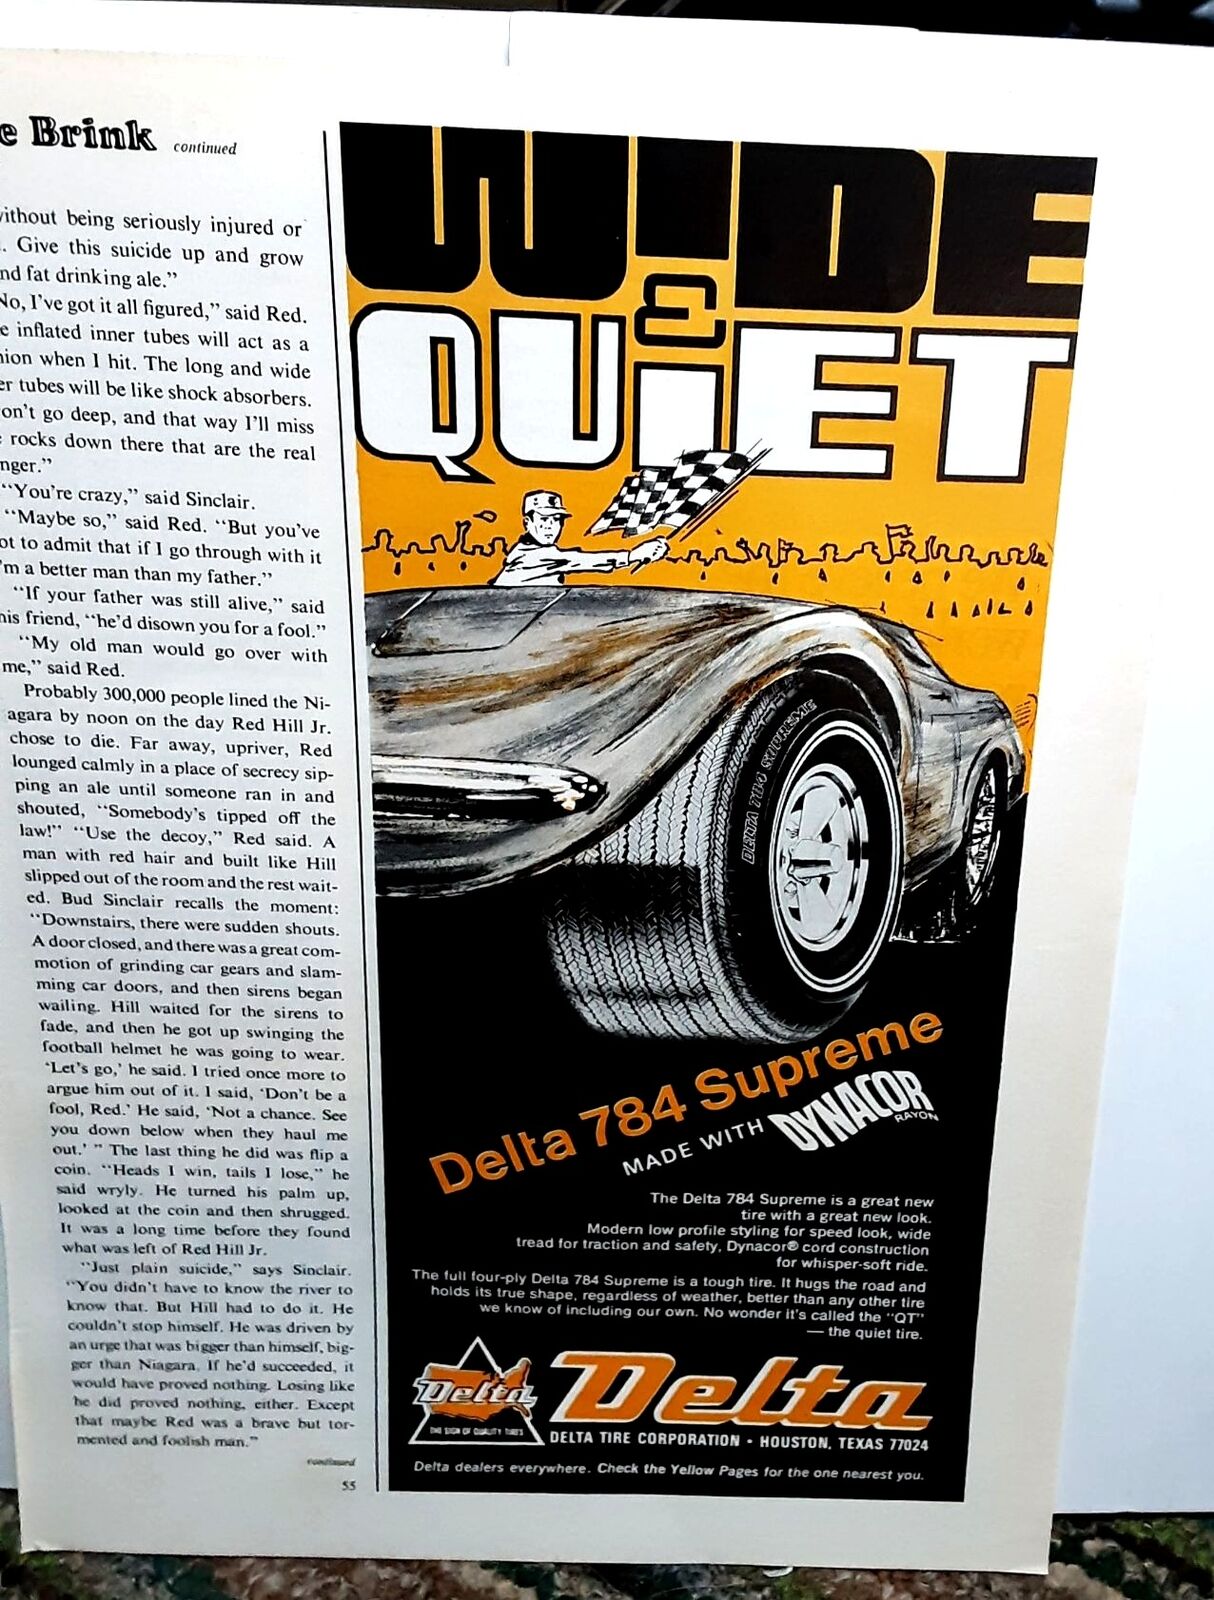 1971 Delta 784 Supreme Tires Vette Dynacor Original Print Ad